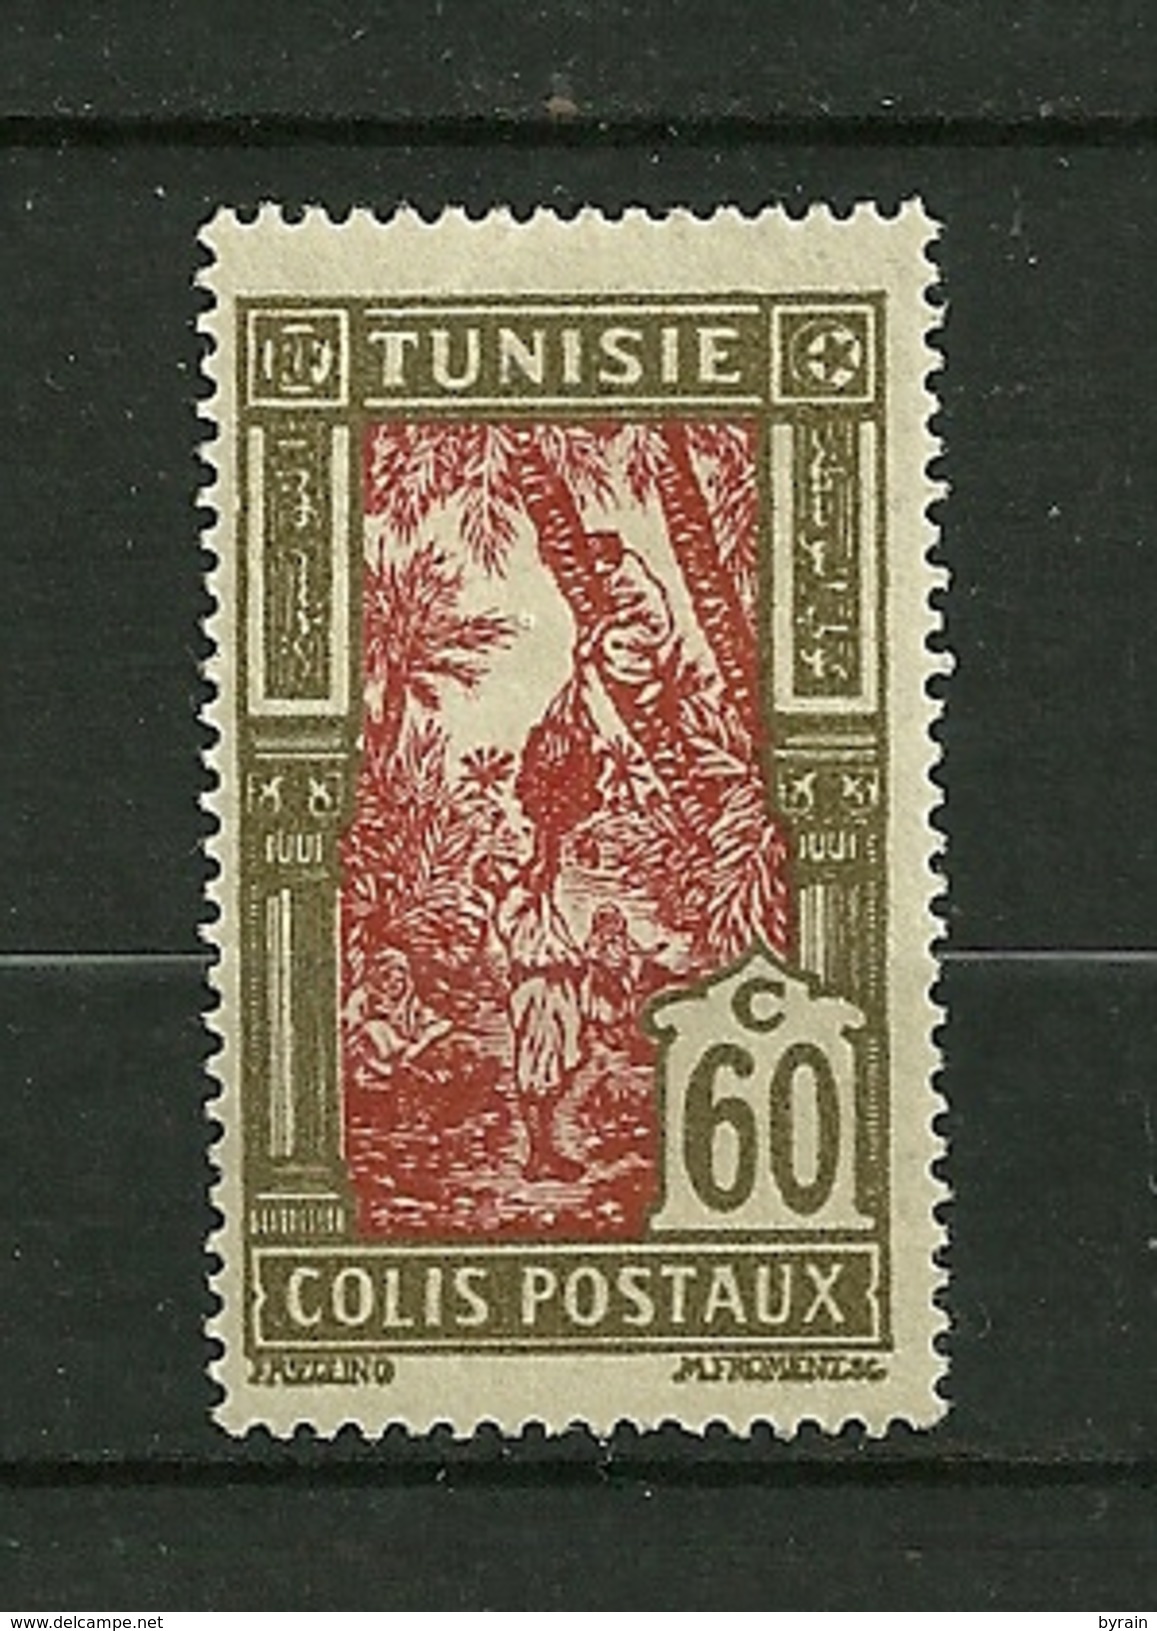 TUNISIE  1926  Colis Postaux   N° 17 " Récolte Des Dattes "   Neuf Avec Trace De Charnière - Timbres-taxe